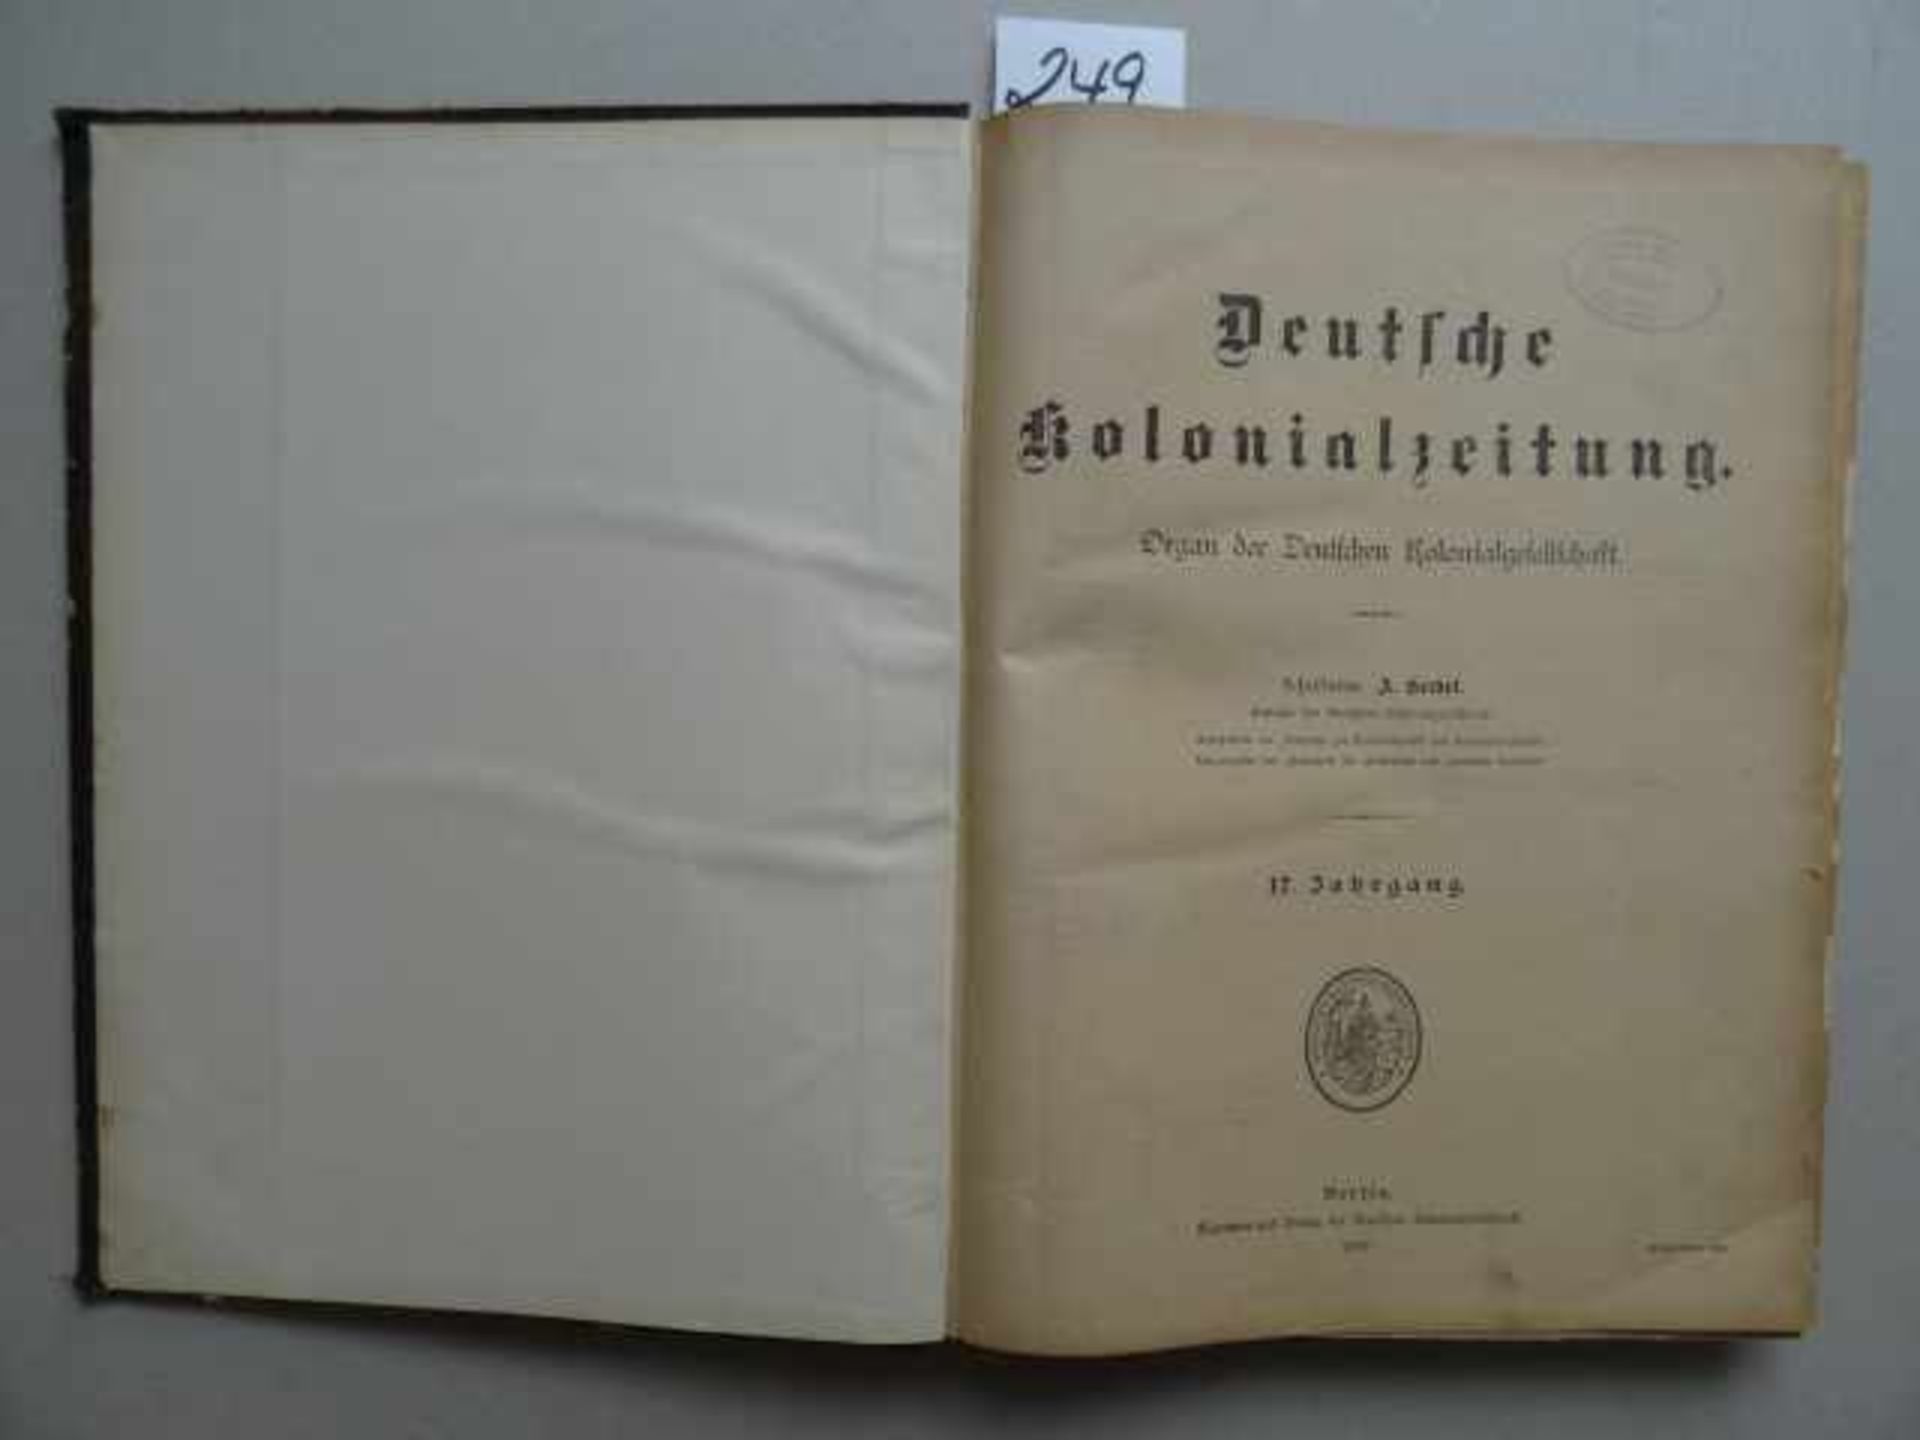 Afrika/Kolonien.- Seidel, A. Deutsche Kolonialzeitung. Organ der Kolonialgesellschaft. 17. Jg. 52